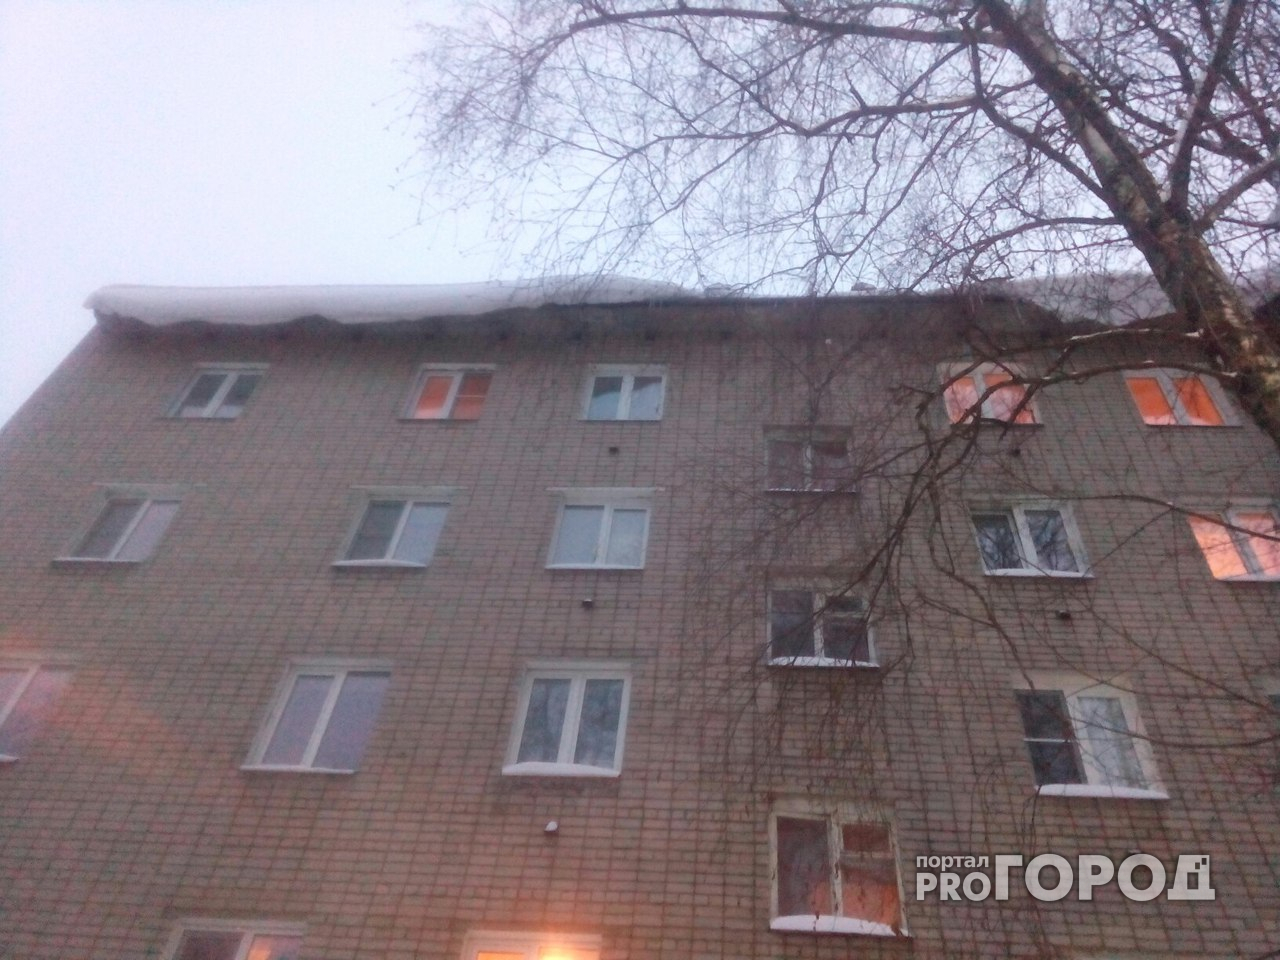 В Ярославле ледяная глыба с крыши упала на девочку: врачи борются за жизнь ребенка